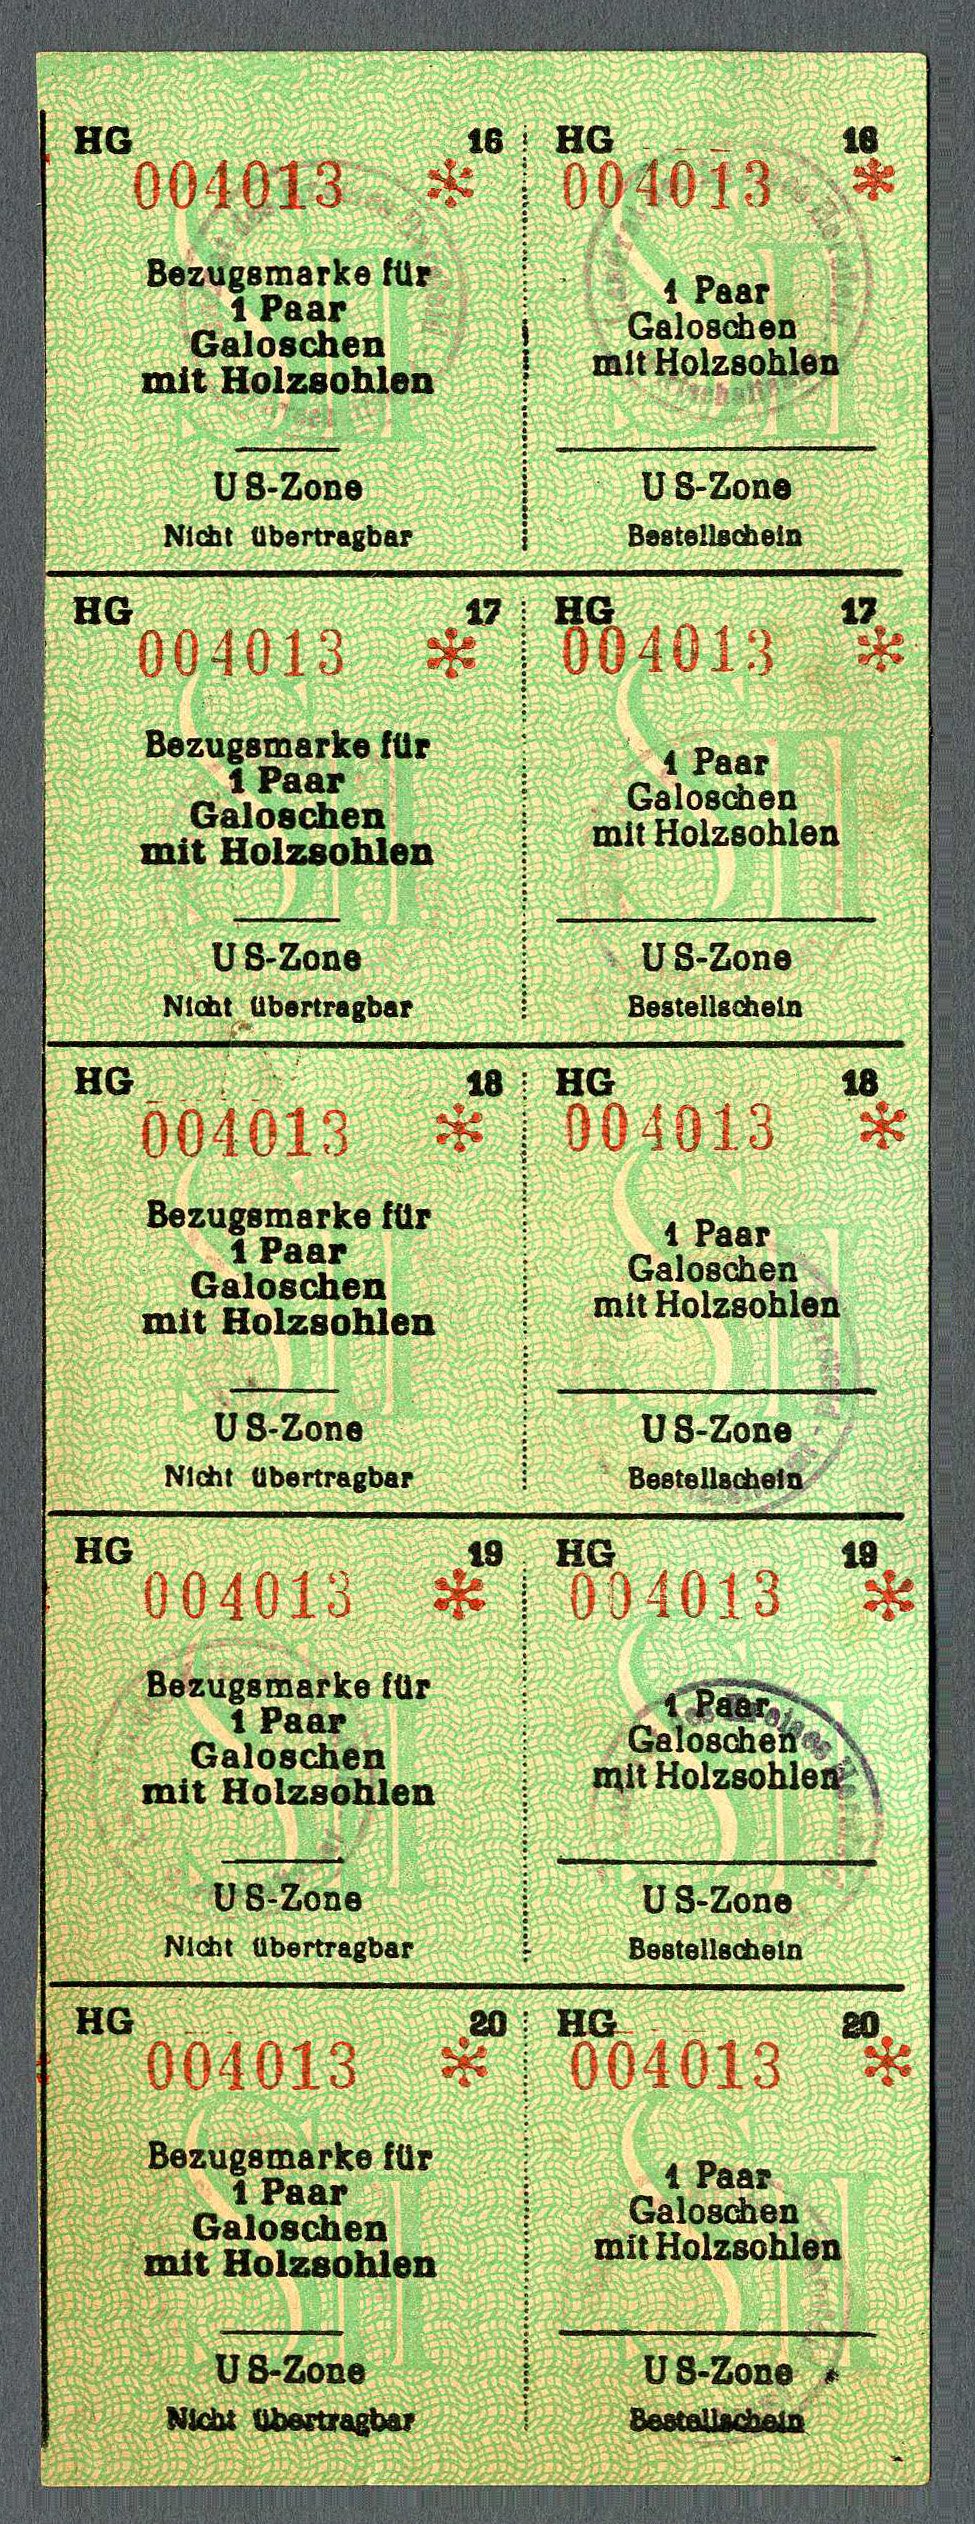 Bezugsmarke für Galoschen mit Holzsohle (Werra-Kalibergbau-Museum, Heringen/W. CC BY-NC-SA)